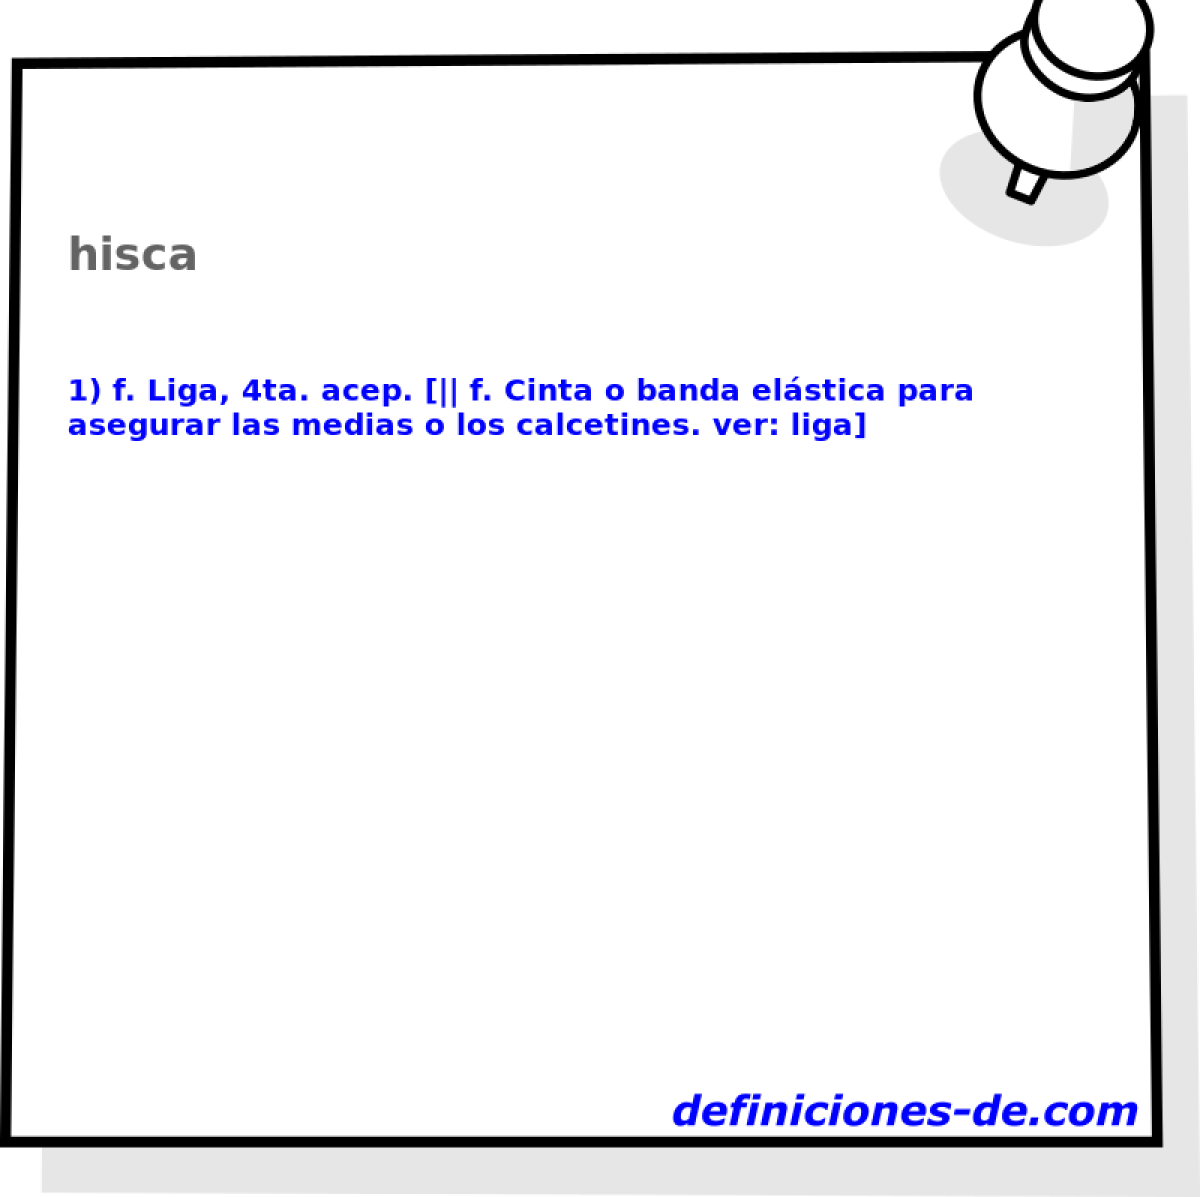 hisca 